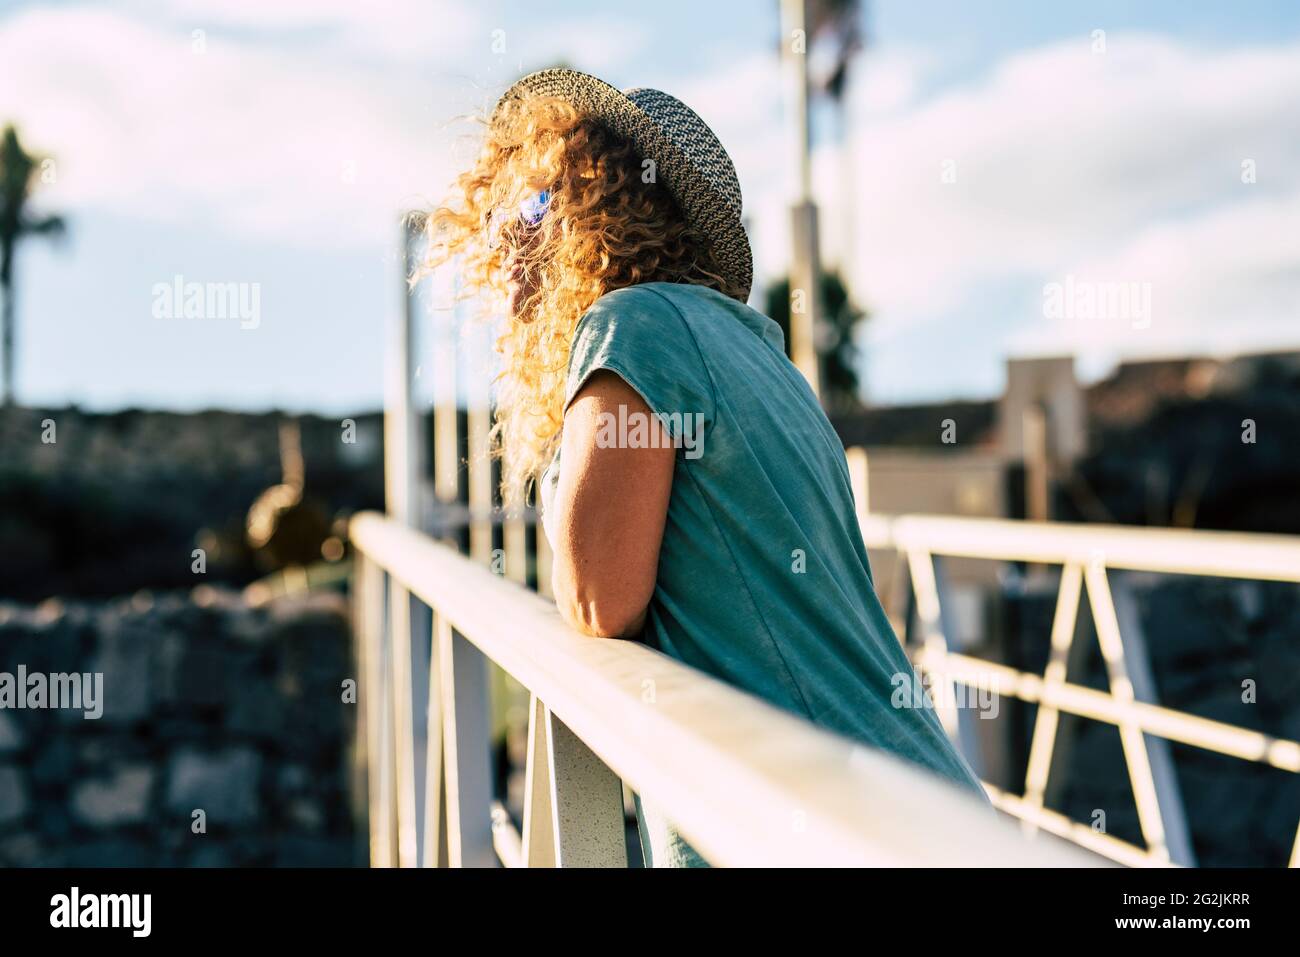 Blonde lange lockiges Haar Frau genießen die Sonne im Freien Freizeitbeschäftigung allein - Konzept der glücklichen Menschen Touristen und Fröhlicher Lebensstil Stockfoto